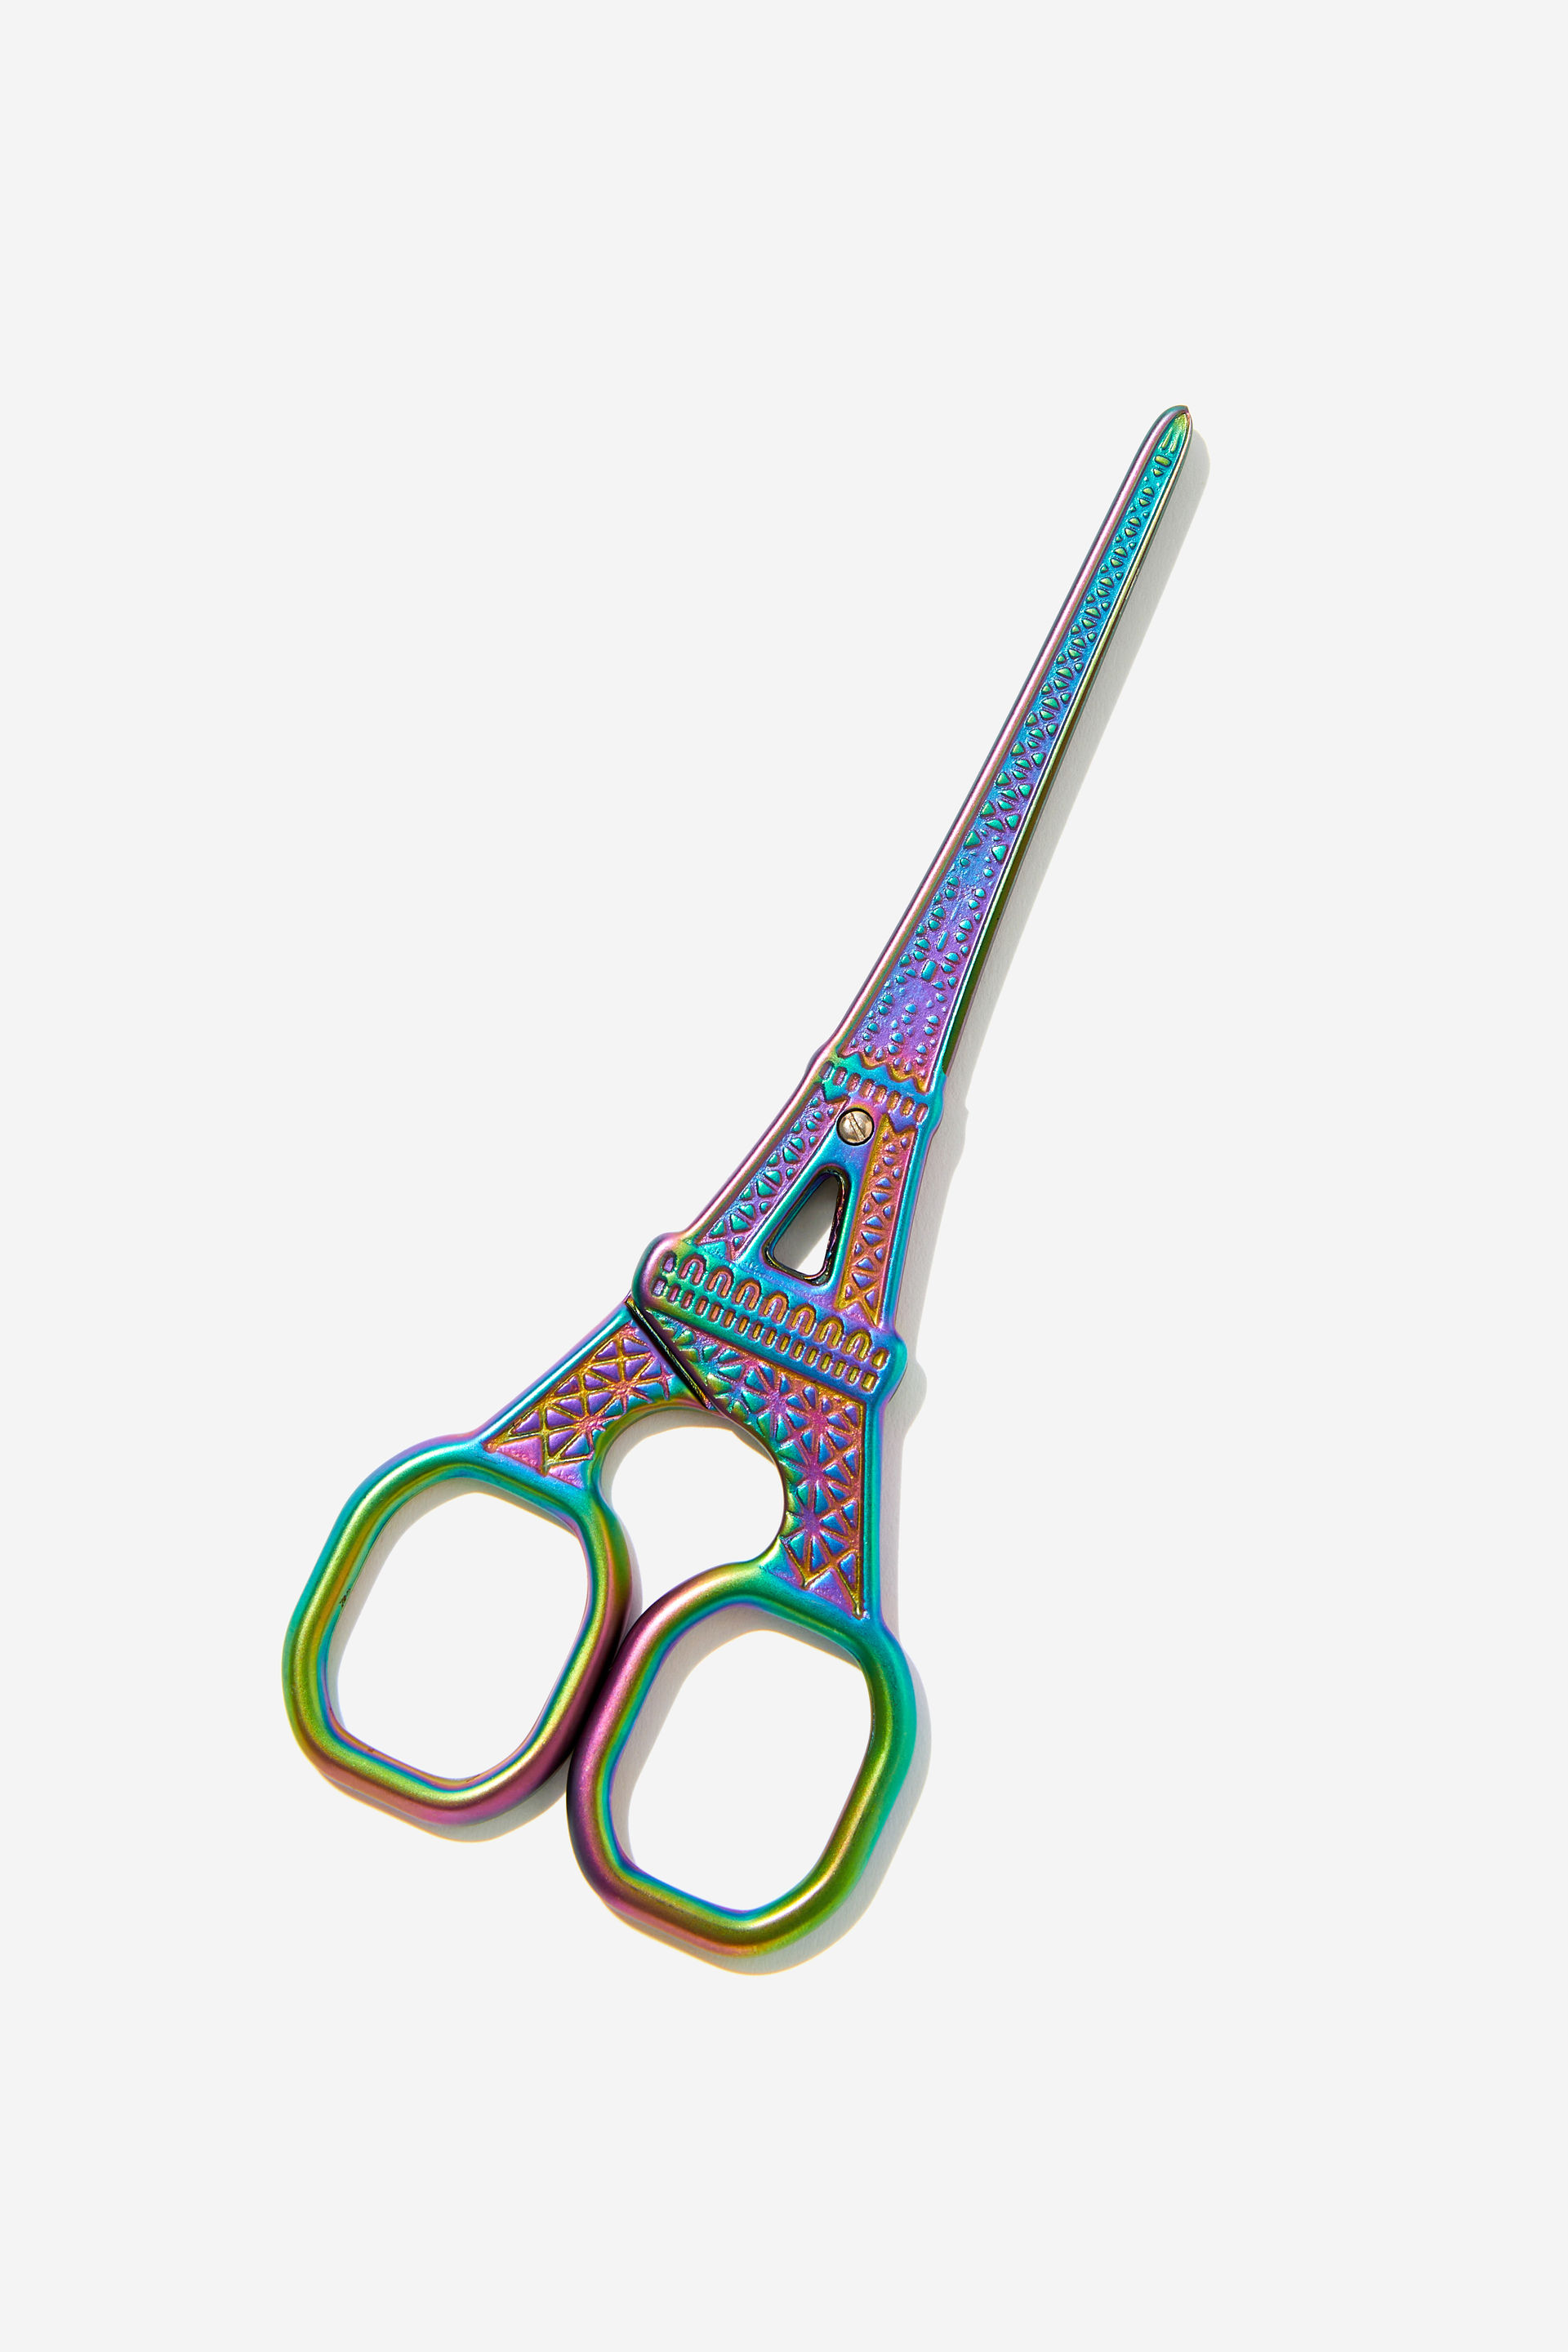 Typo - Shaped Metal Scissors - Eiffel tower oil slick